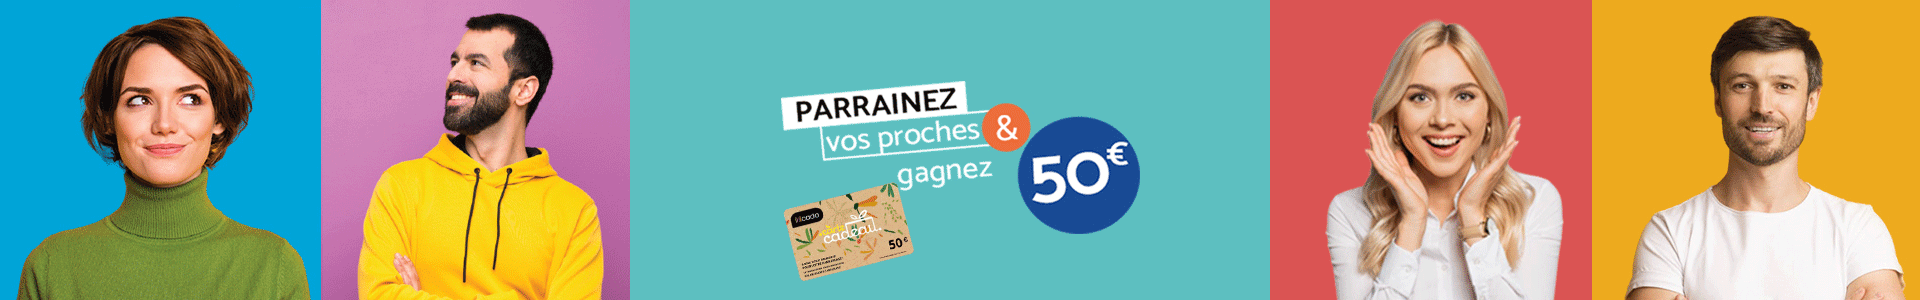 banniere-parrainage-270524-lst-3